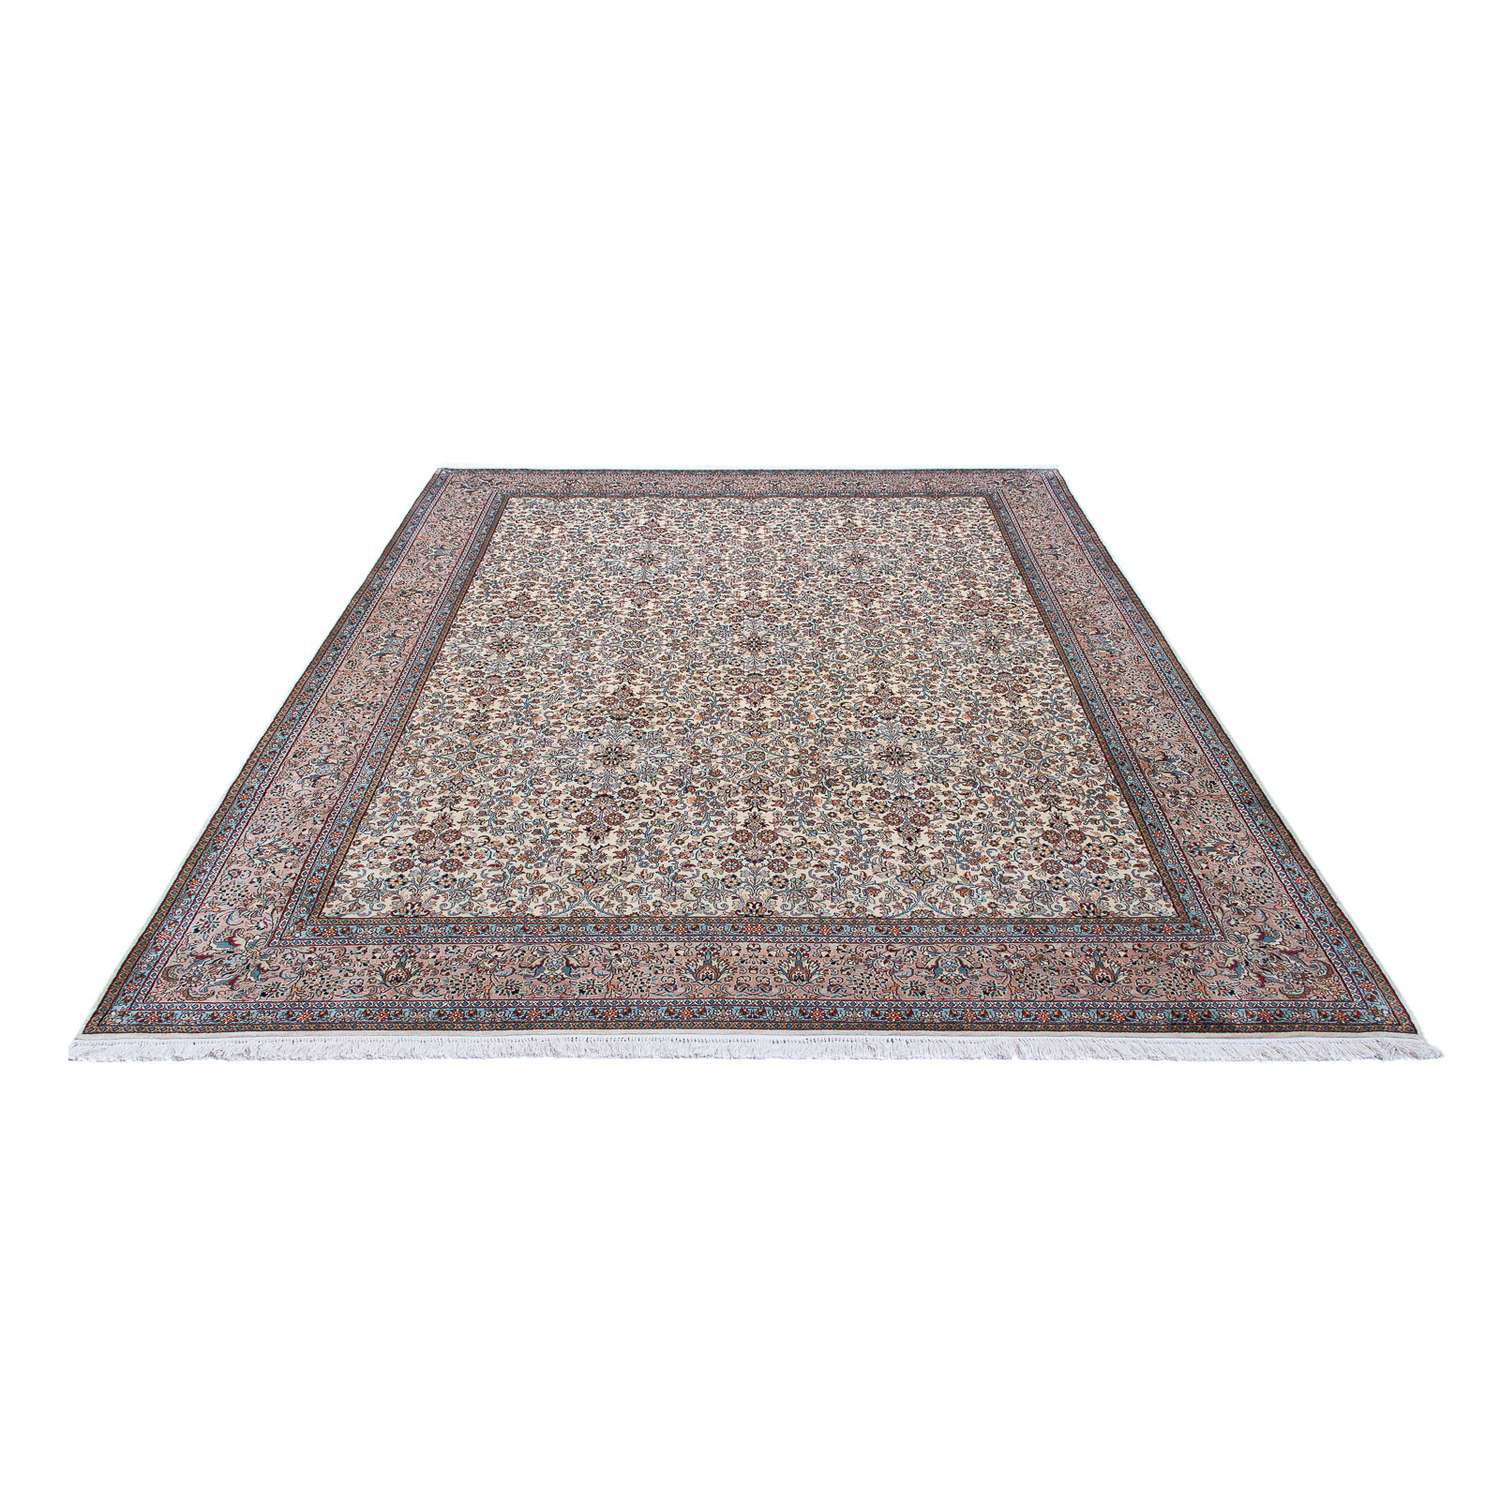 Persisk teppe - klassisk - 309 x 250 cm - beige